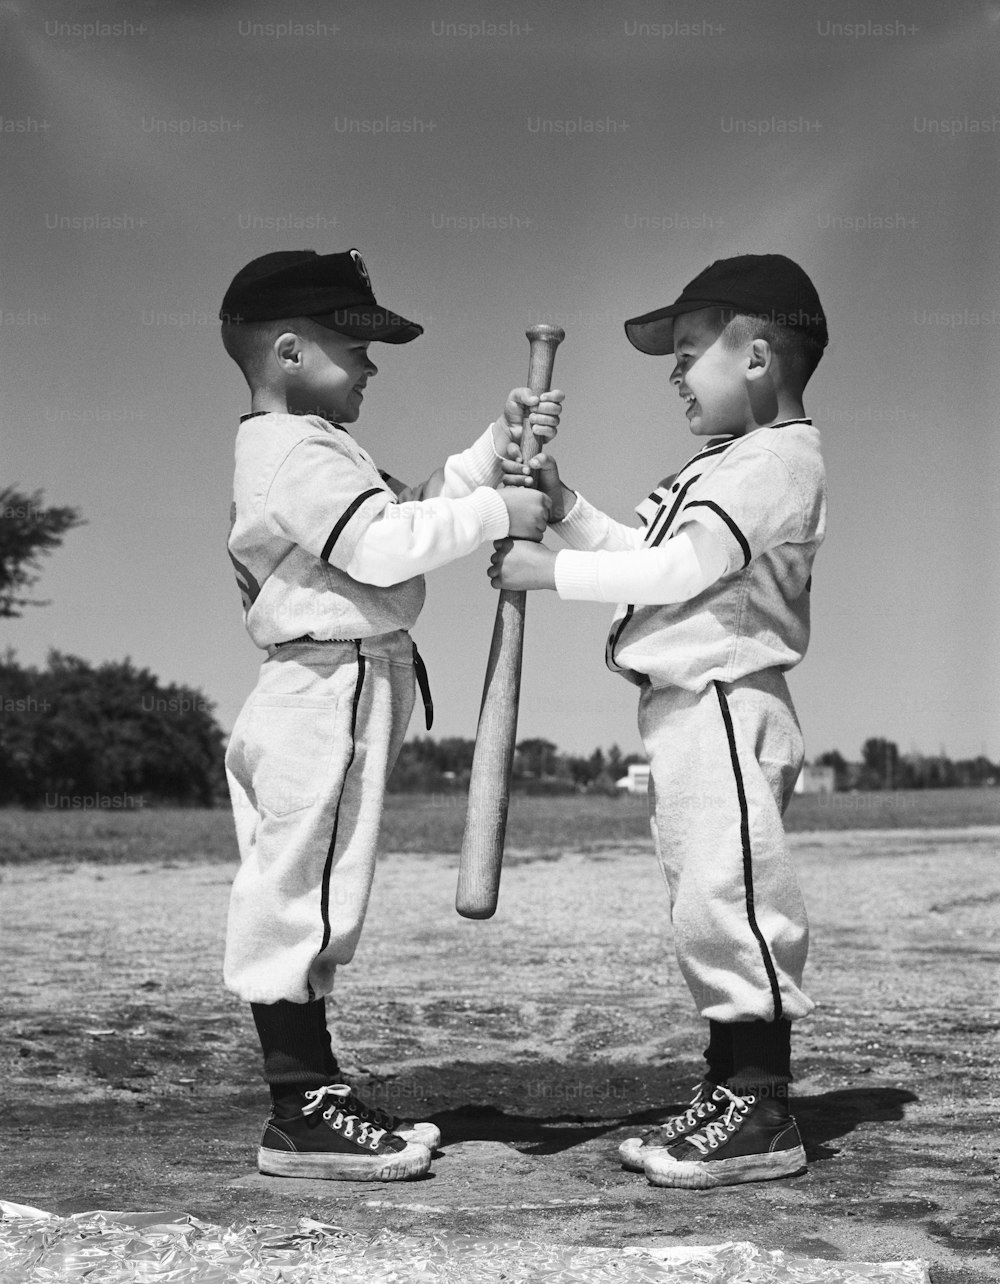 ESTADOS UNIDOS - Alrededor de la década de 1960: Dos niños con uniformes de las Pequeñas Ligas, uno frente al otro, sosteniendo un bate de béisbol.